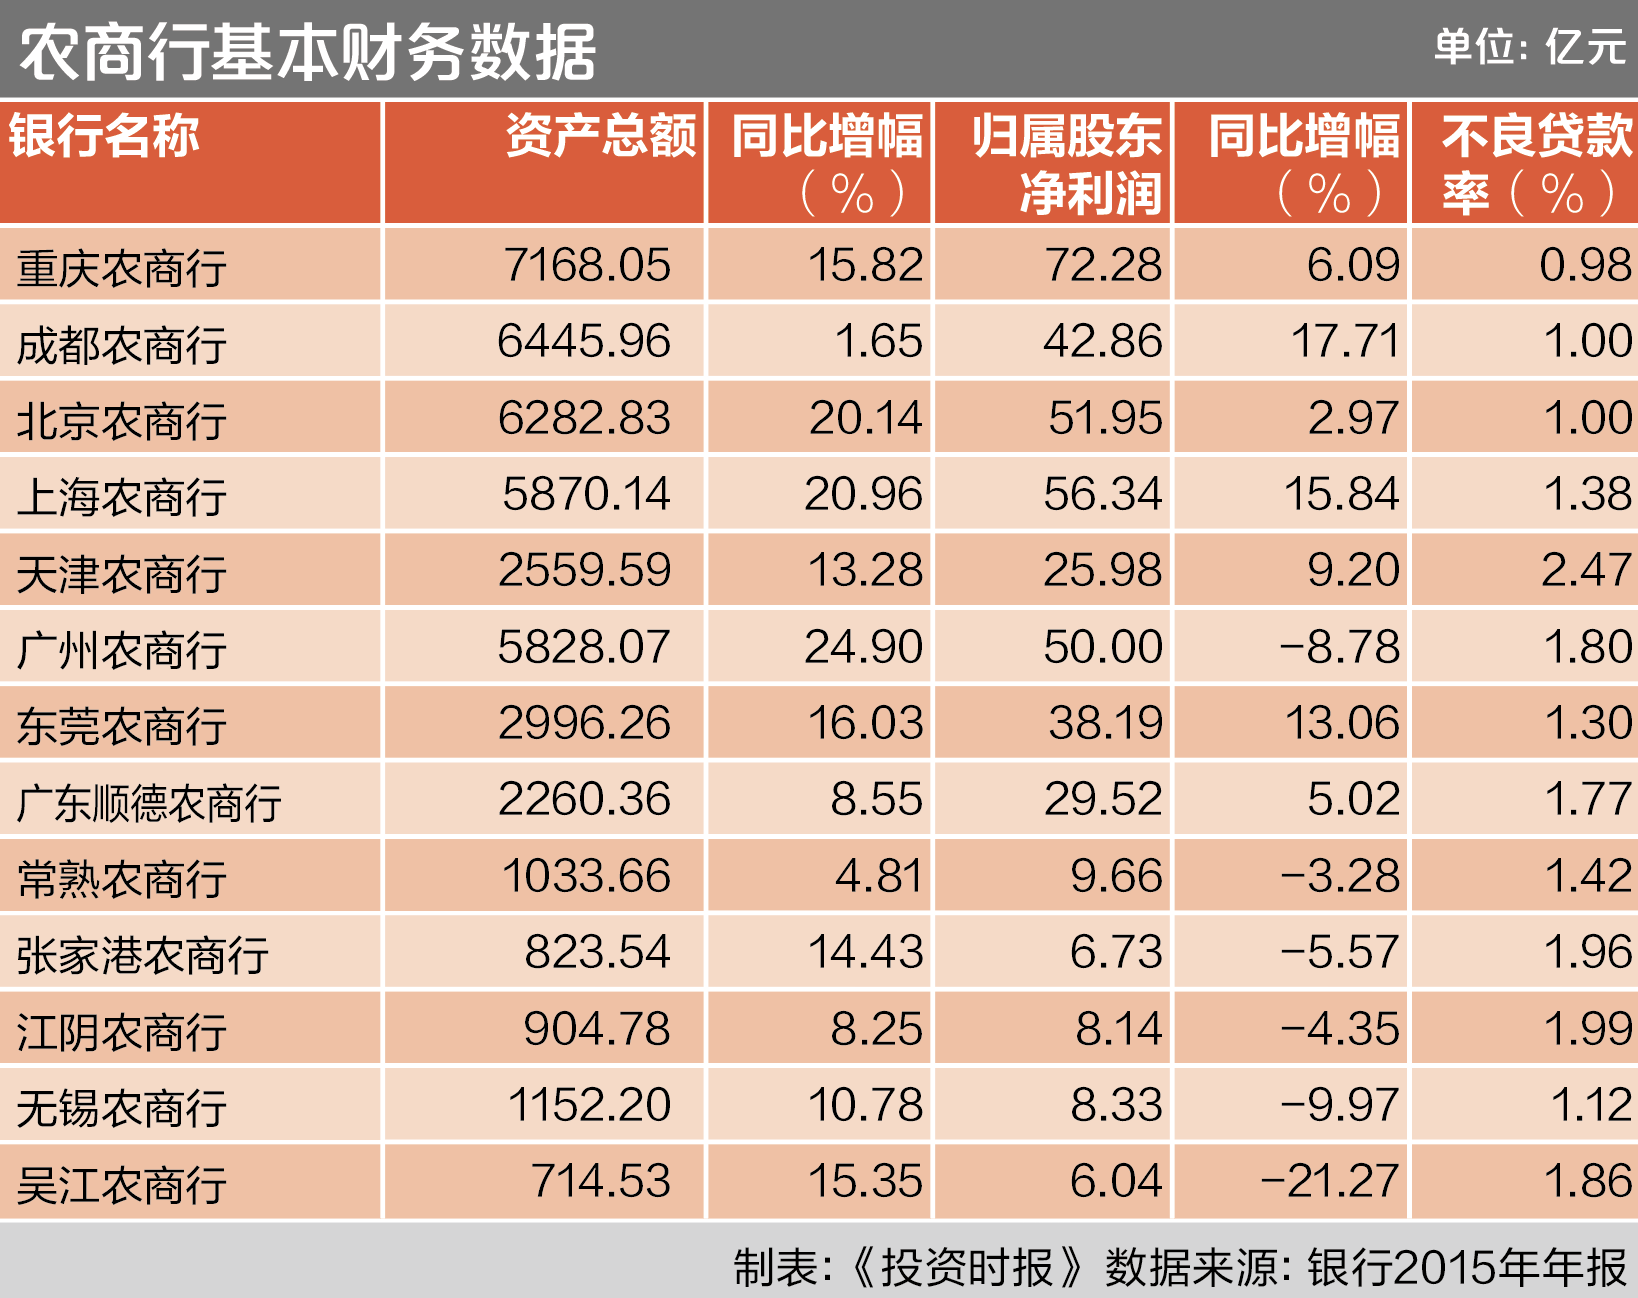 农商行:吴江规模行业垫底 天津不良率最高 - 财